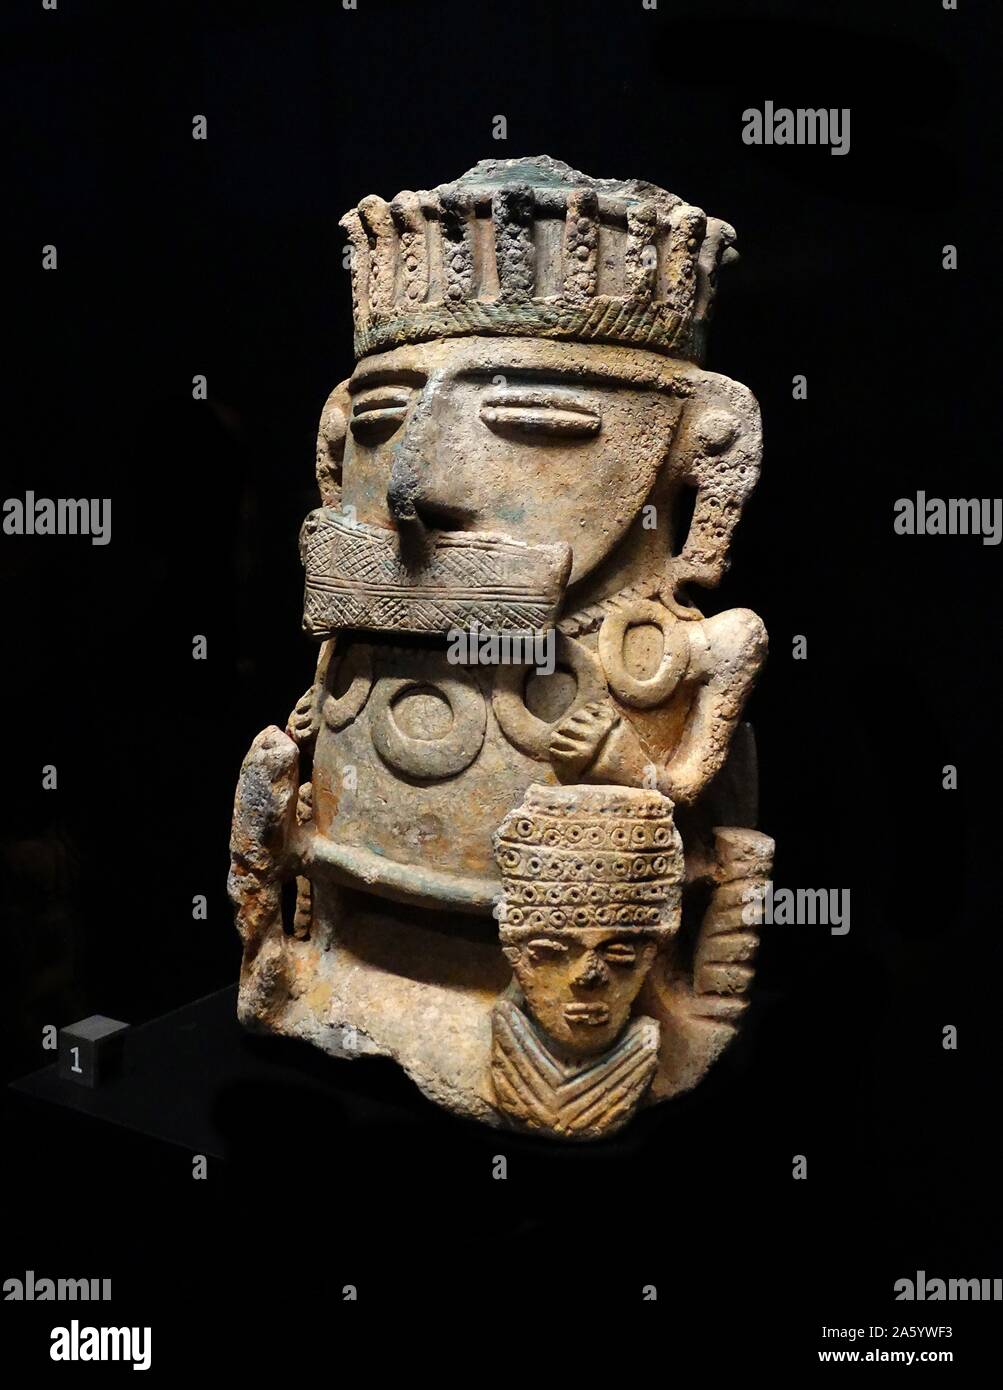 Estatuilla de terracota de una persona de alto rango procedentes de Colombia. Fecha del siglo XV. Foto de stock